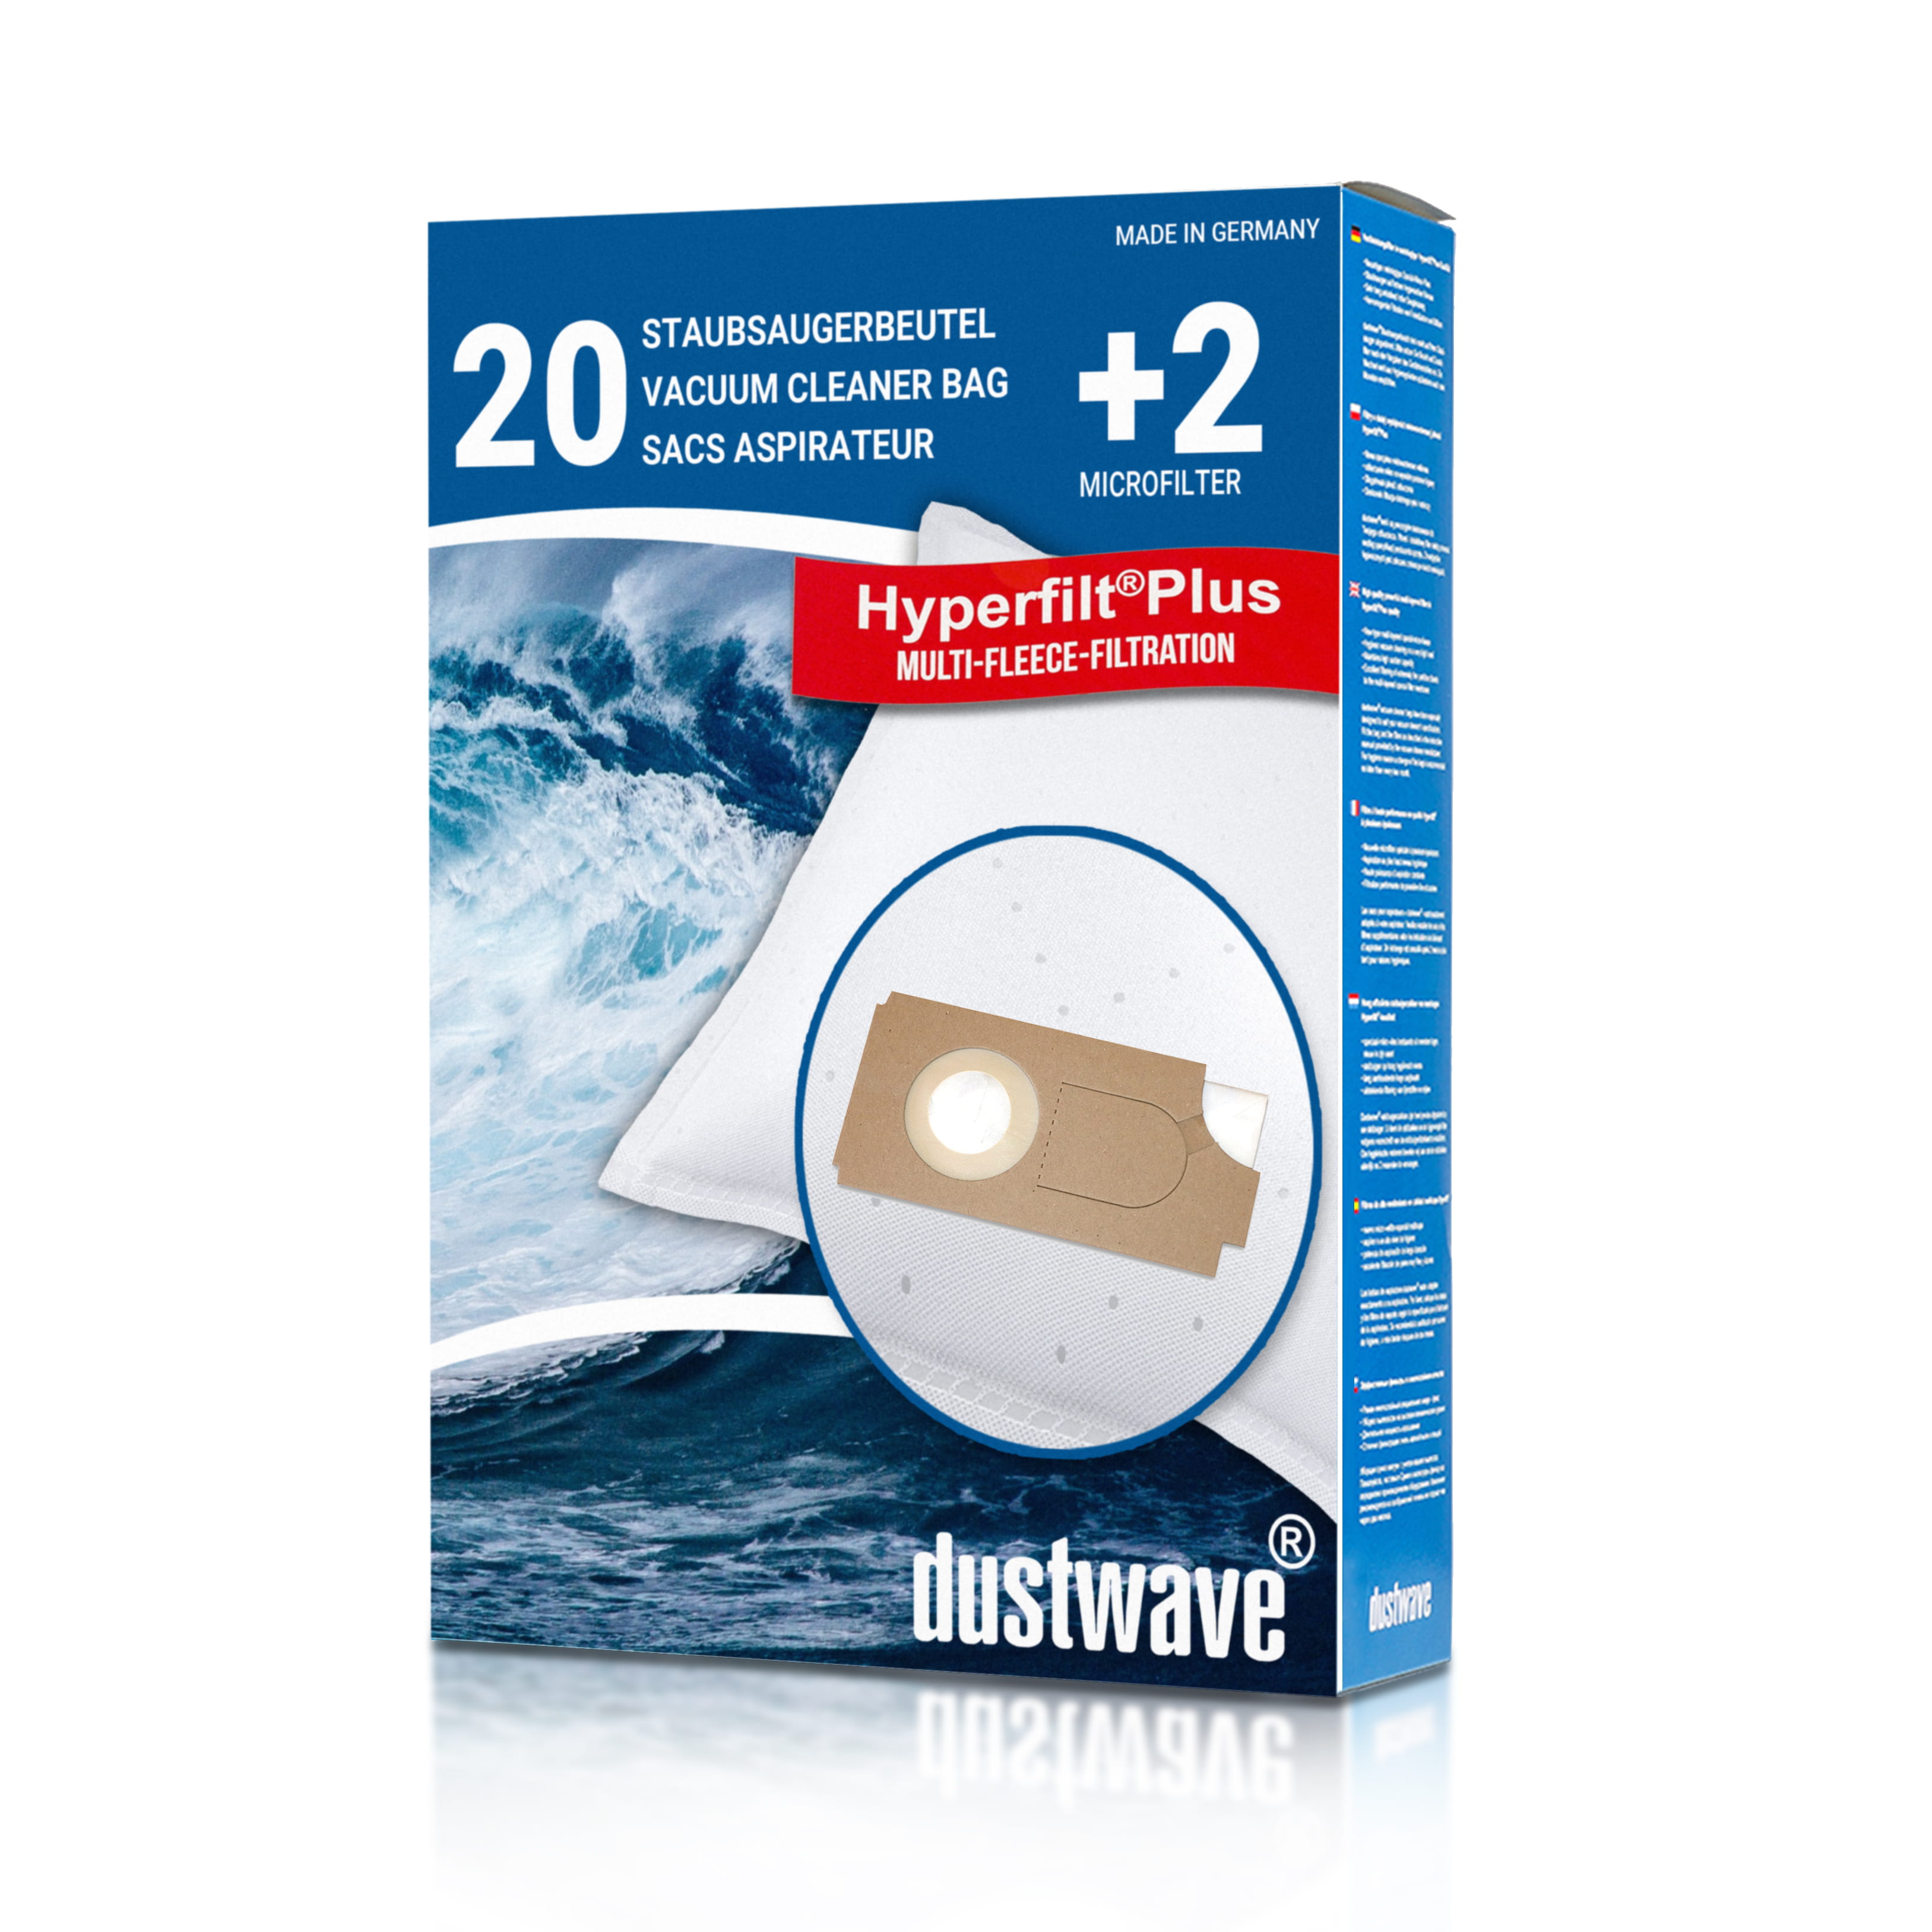 Dustwave® 20 Staubsaugerbeutel für Columbus 26 - hocheffizient mit Hygieneverschluss - Made in Germany